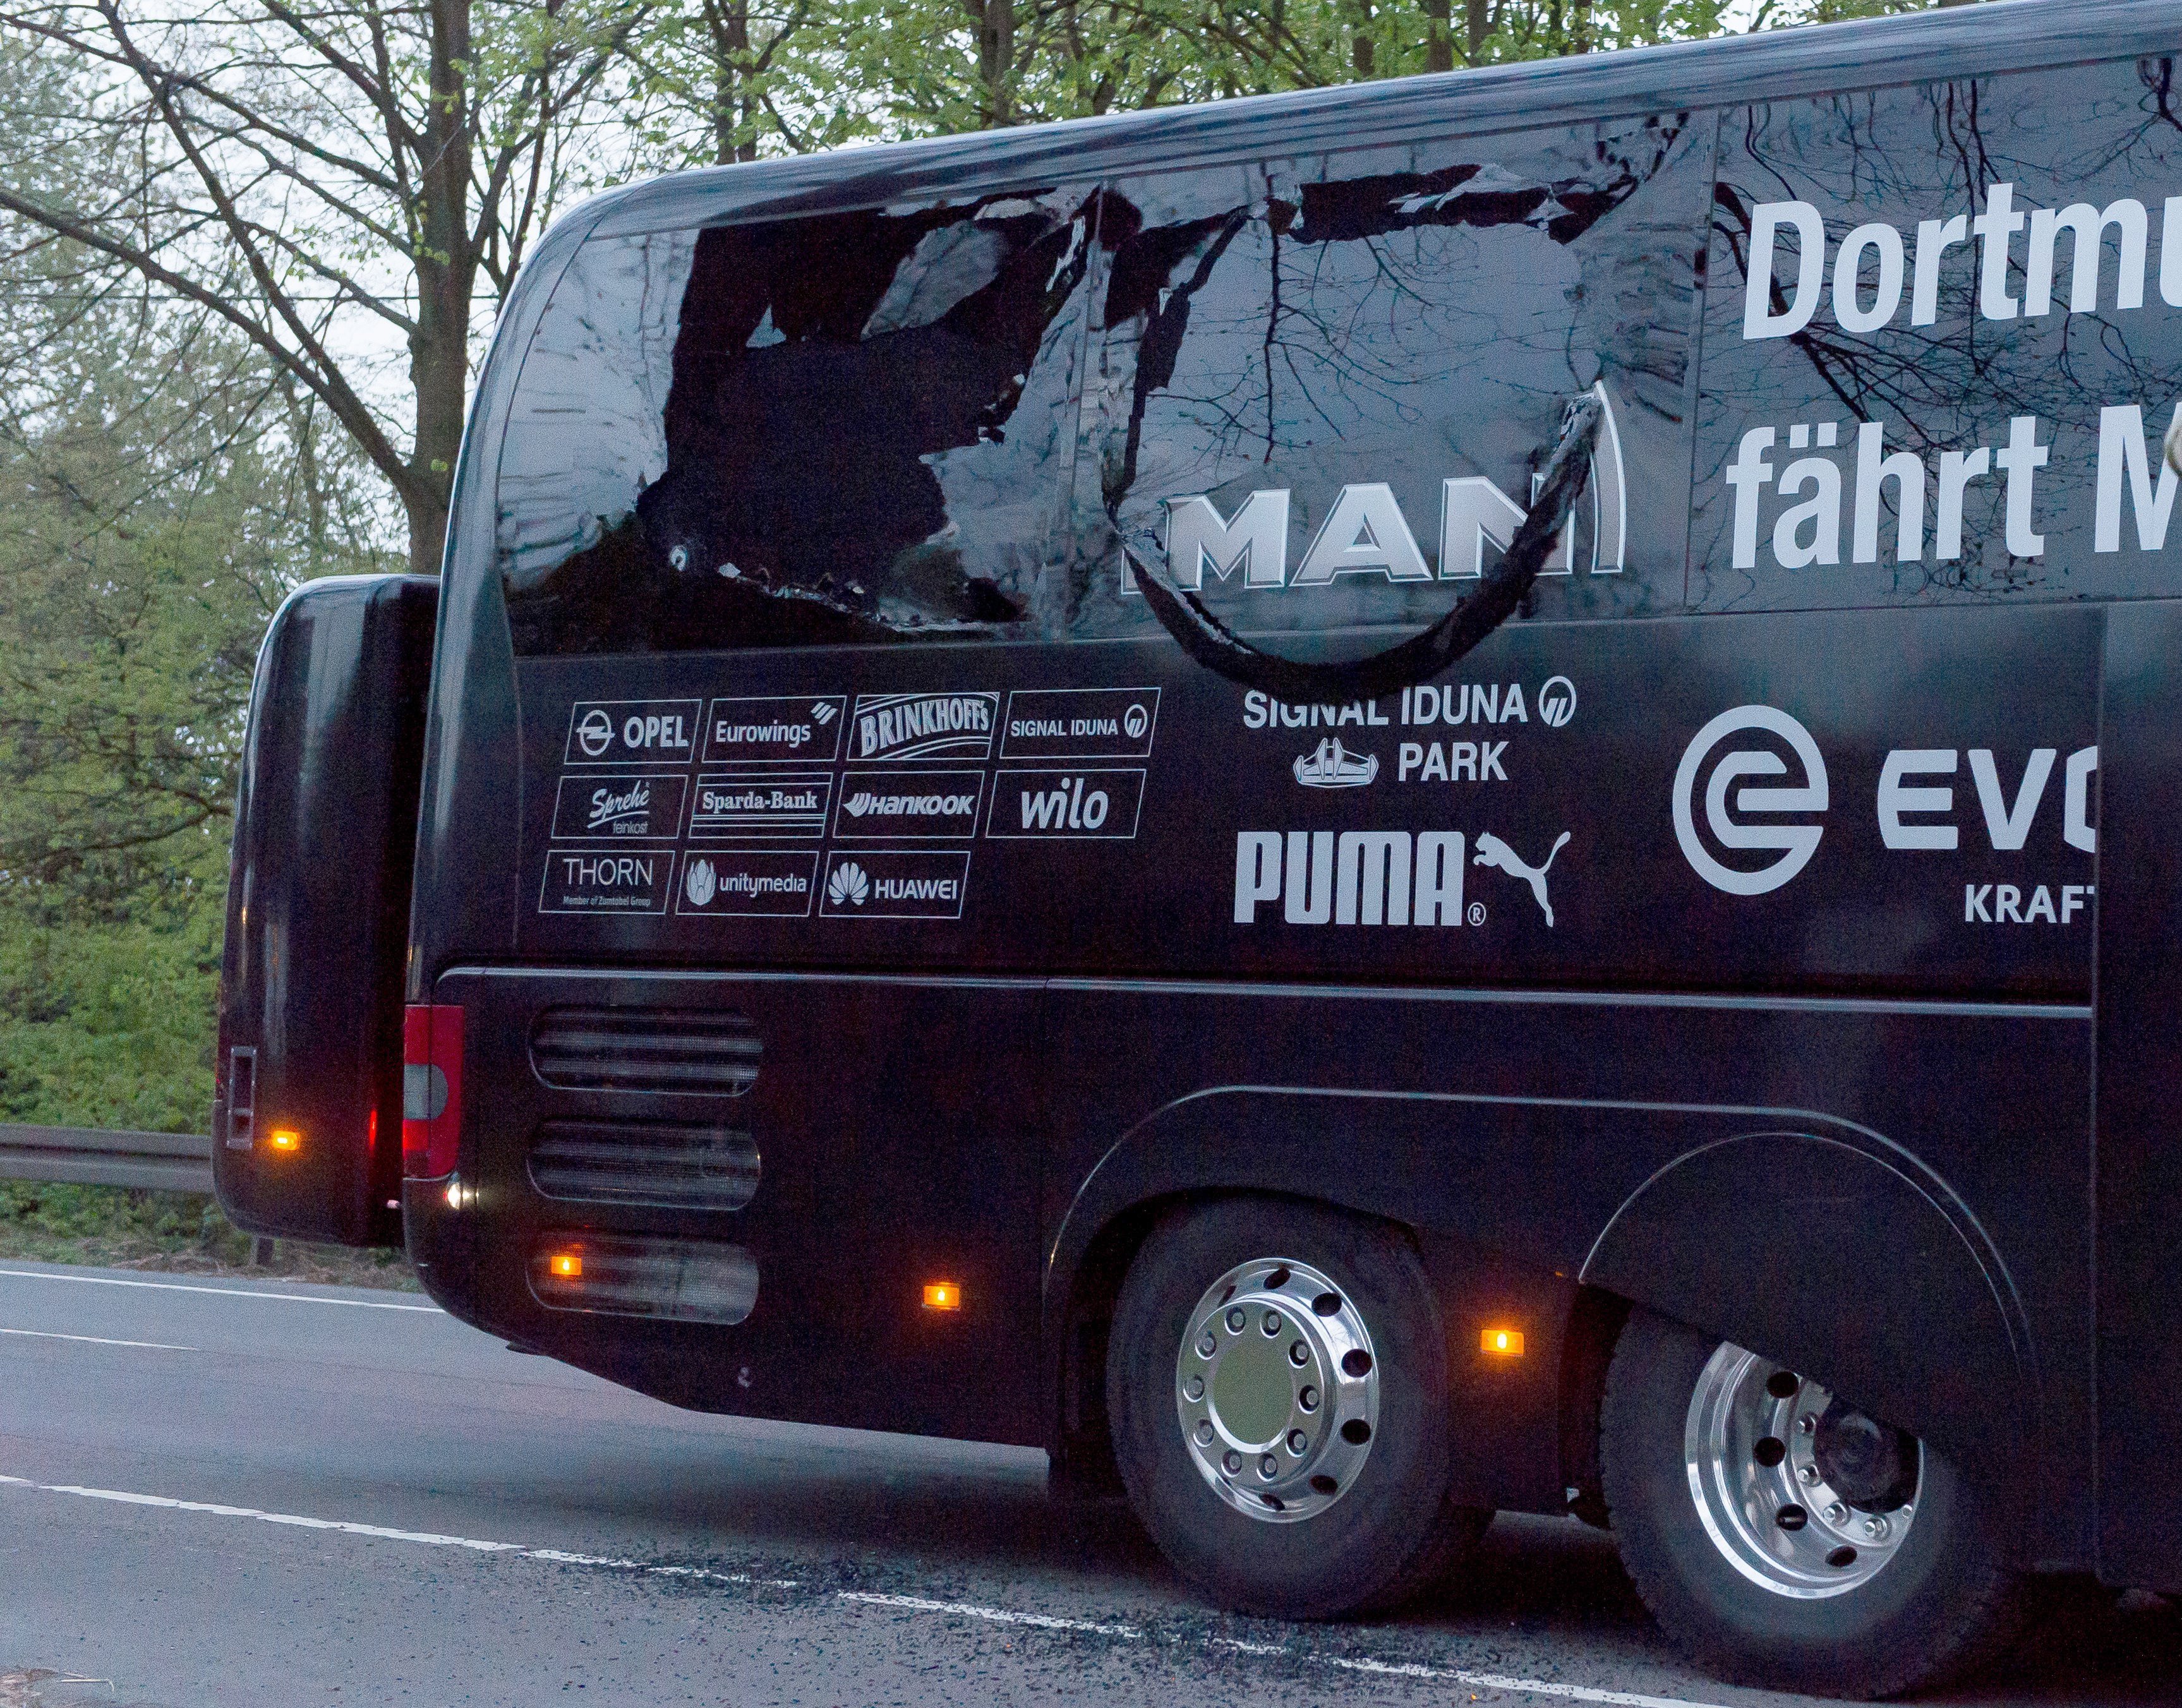 Detingut un presumpte gihadista per l’atac a l'autobús del Dortmund